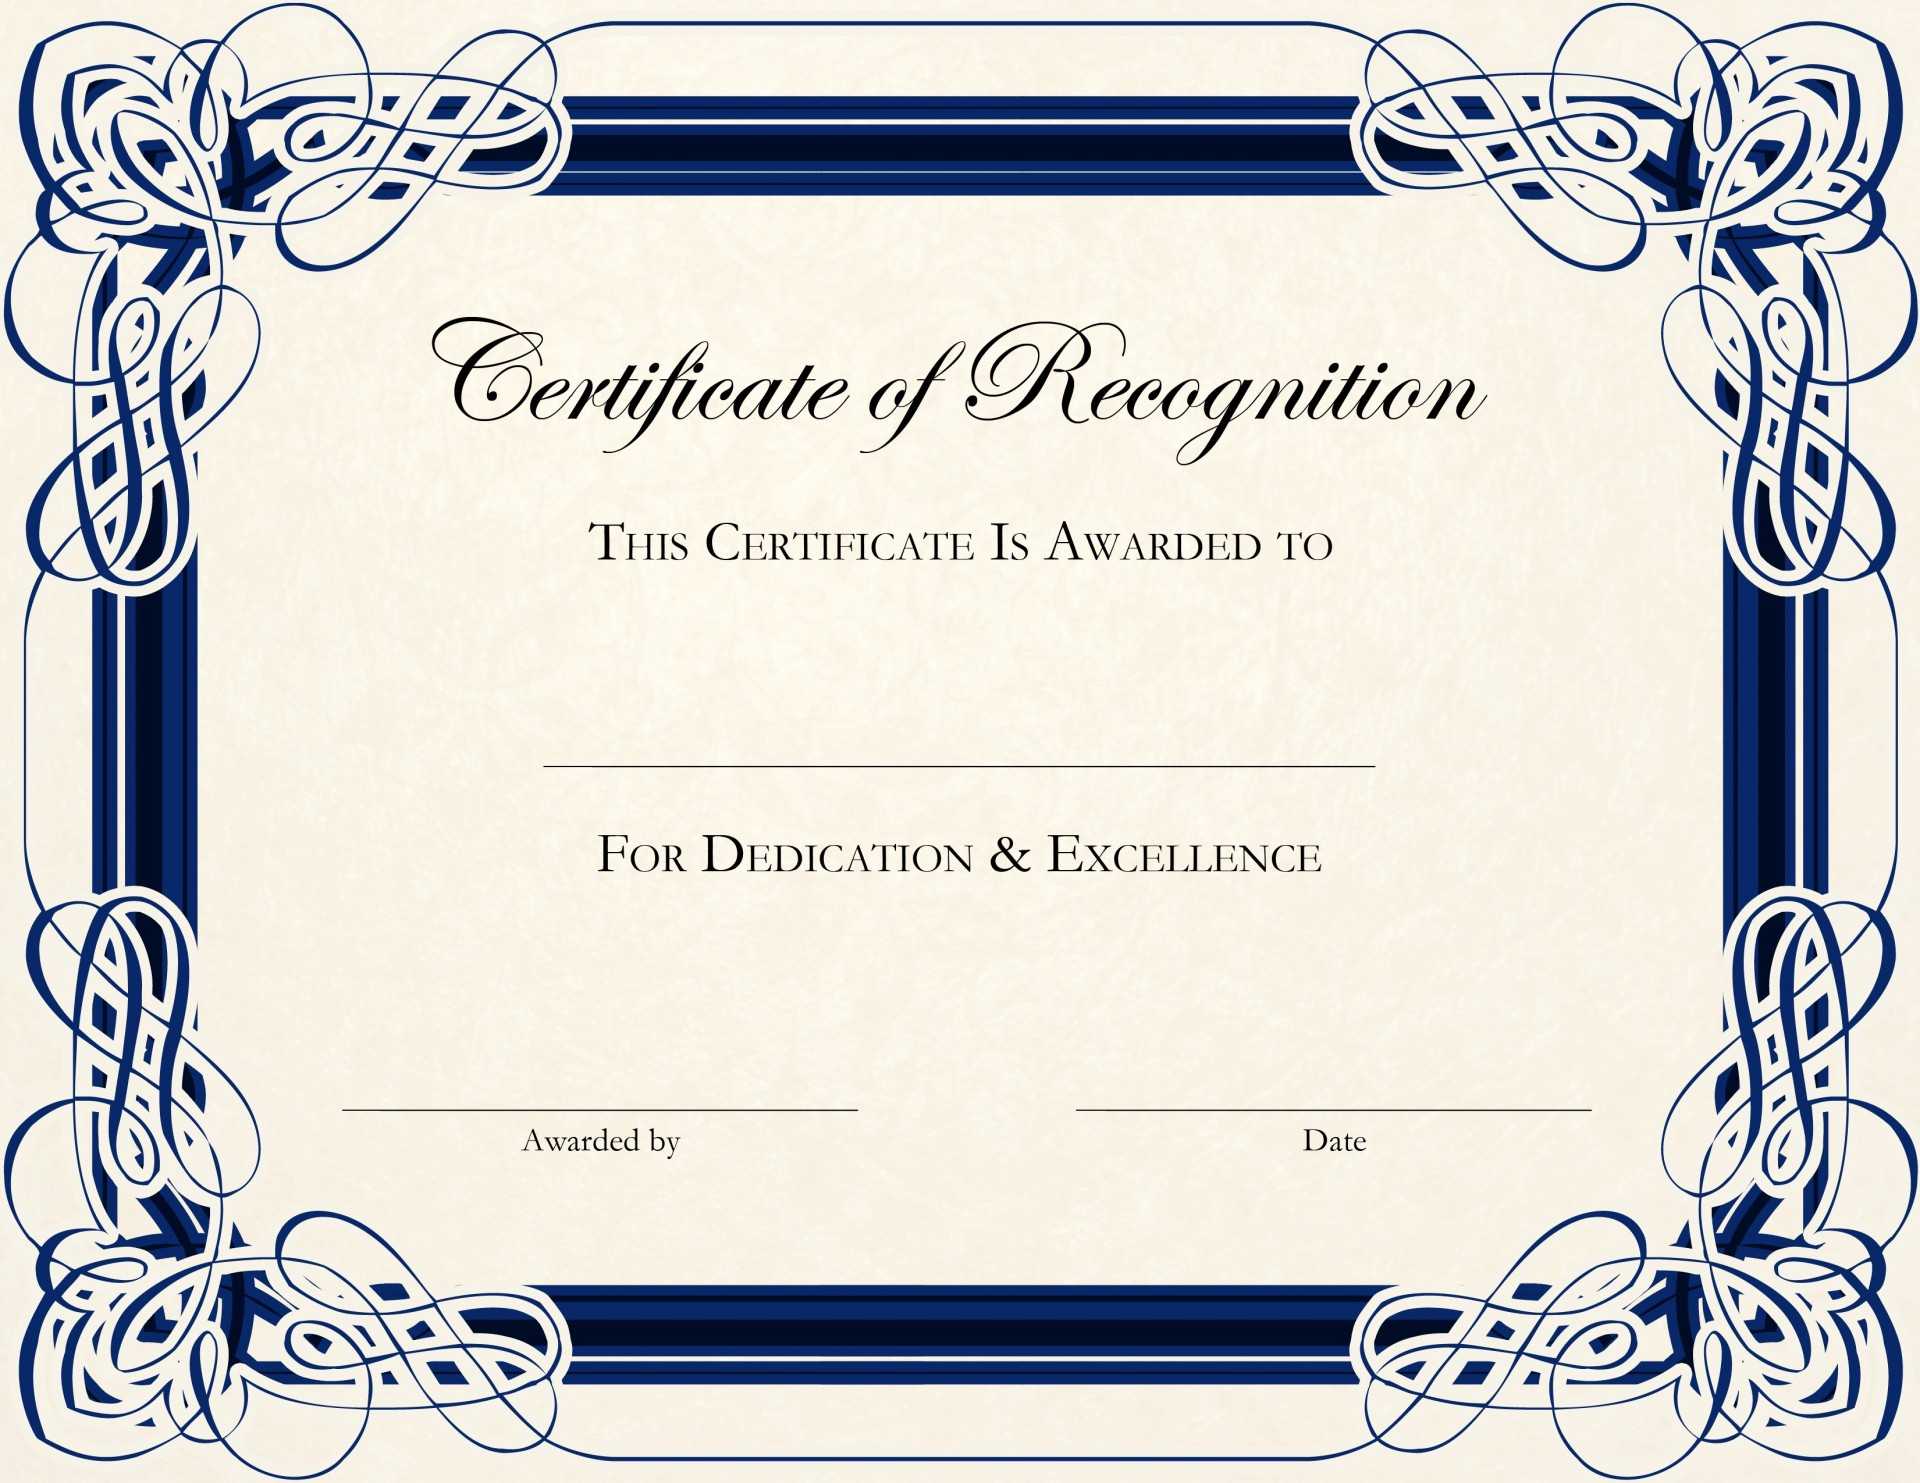 013 Png Certificates Award Repin Image Certificate Template Regarding Pageant Certificate Template